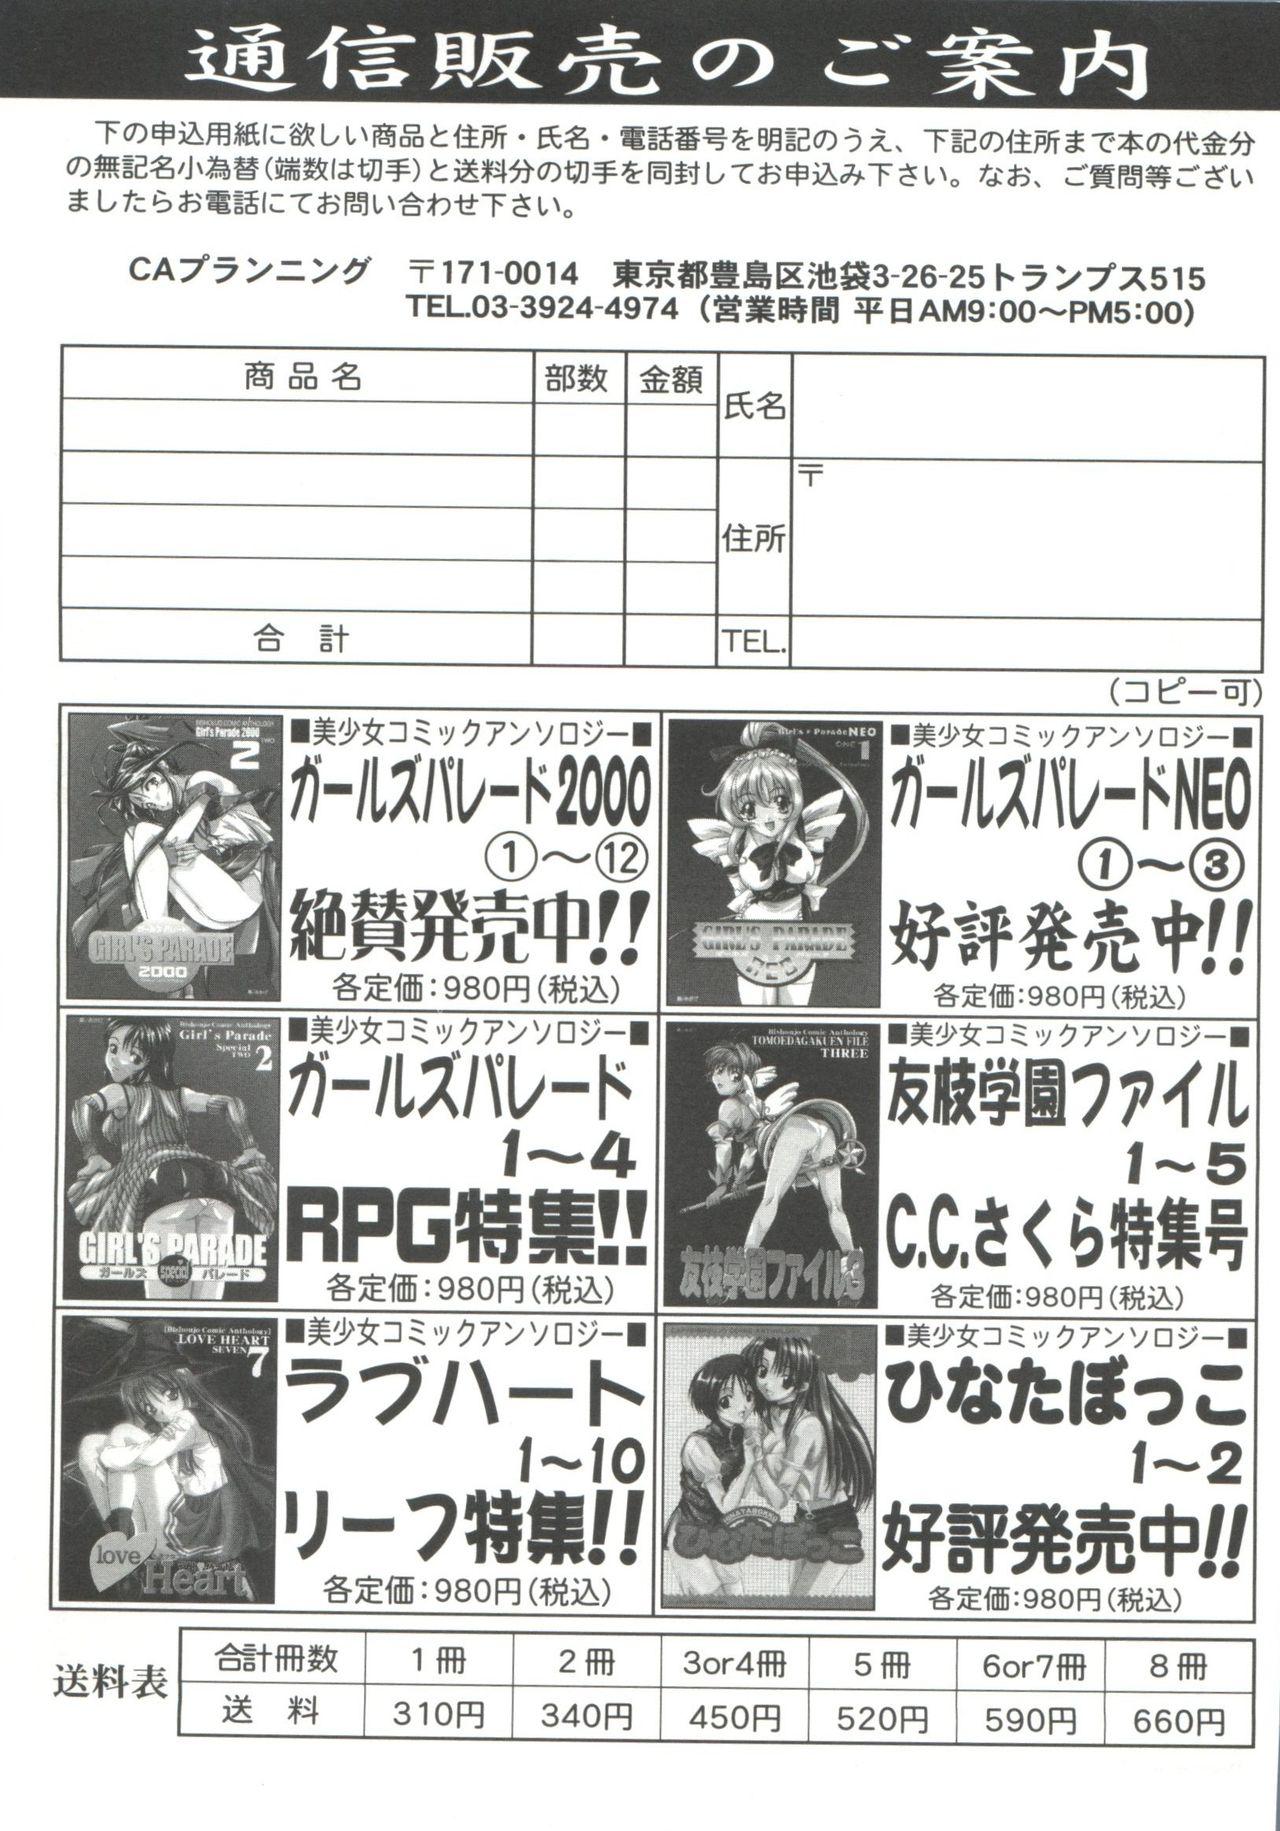 Abuse Tomoeda Gakuen File 5 - Cardcaptor sakura Wank - Page 187